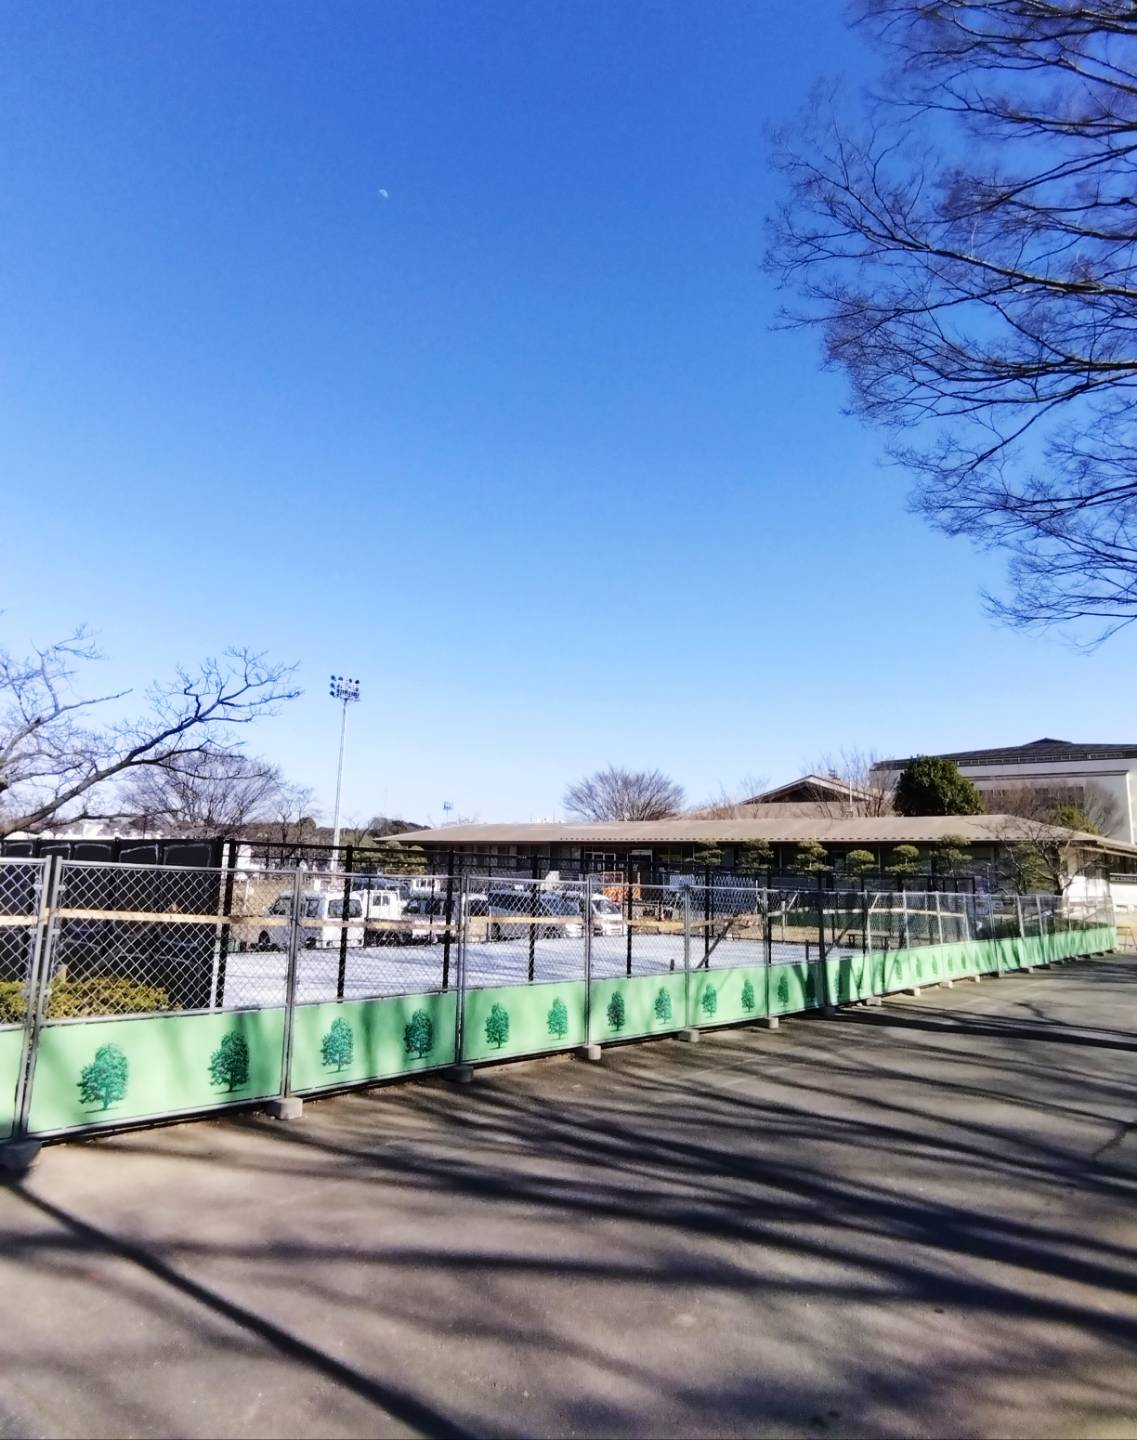 スケートボード場松戸運動公園新設スケボー施設